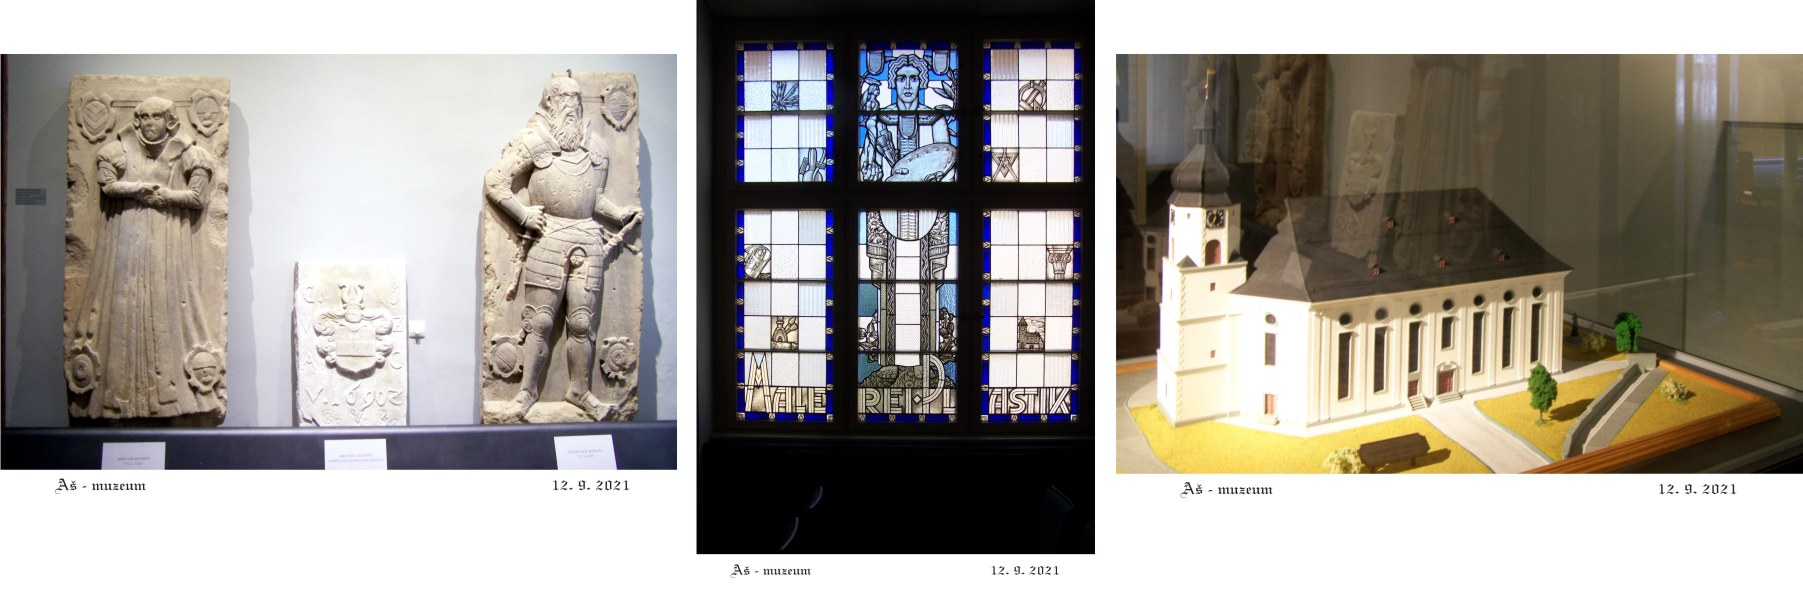 V ašském muzeu najdeme model zbouraného kostela Nejsvětější Trojice.